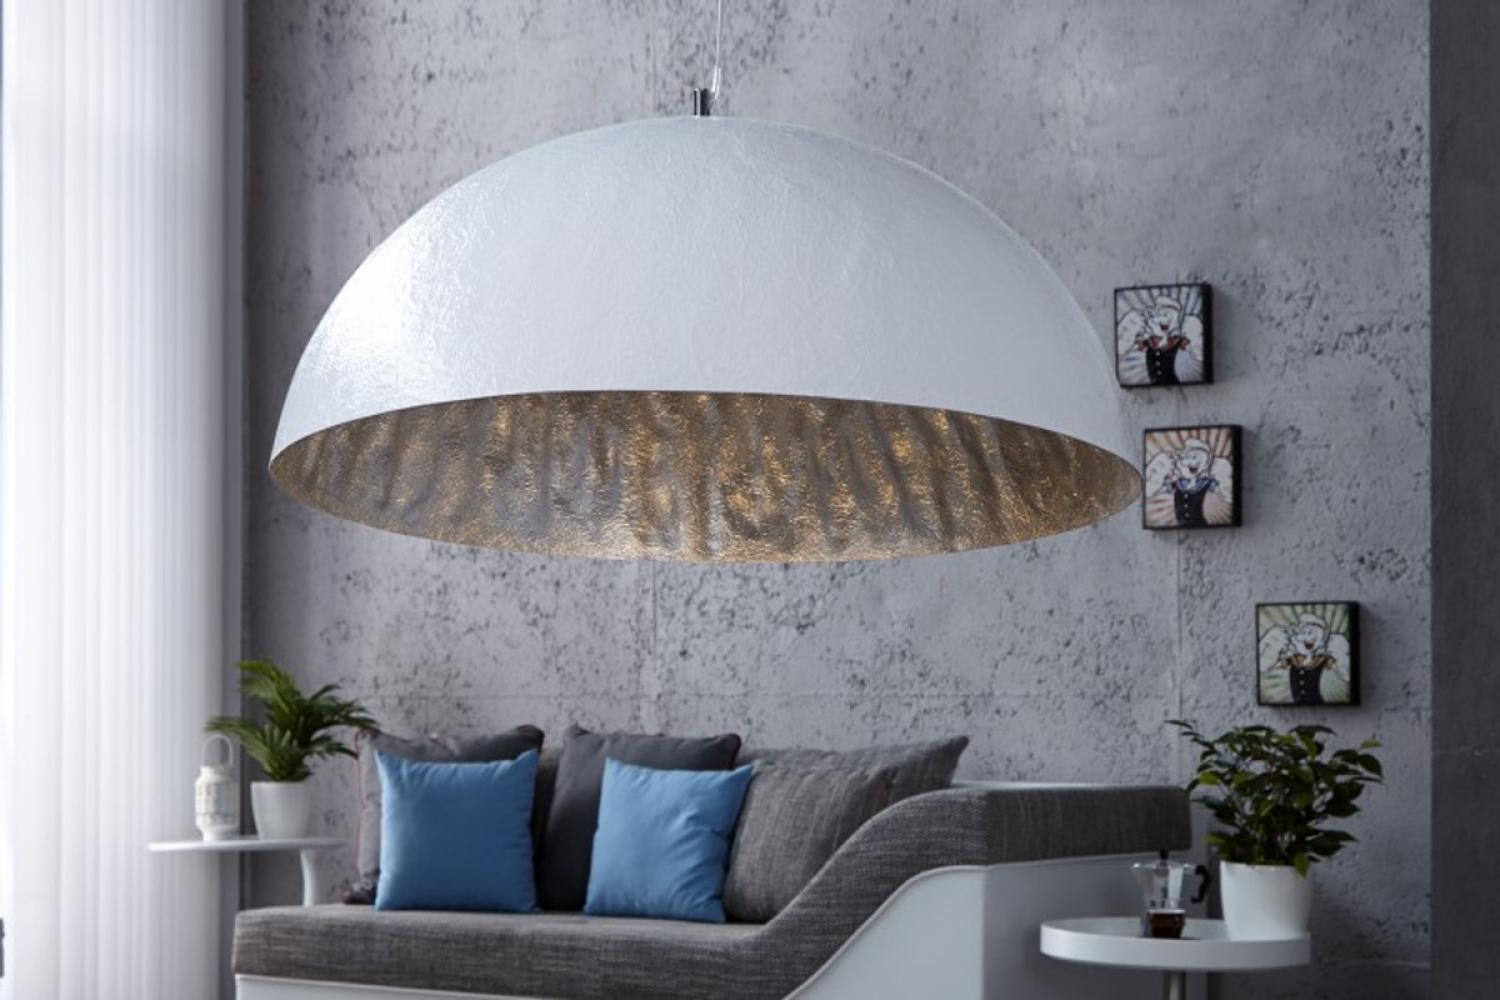 Casa Padrino Designer Pendelleuchte aus Edelstahl, Weiß / Silber, Durchmesser 70 cm - Leuchte Lampe Bild 1